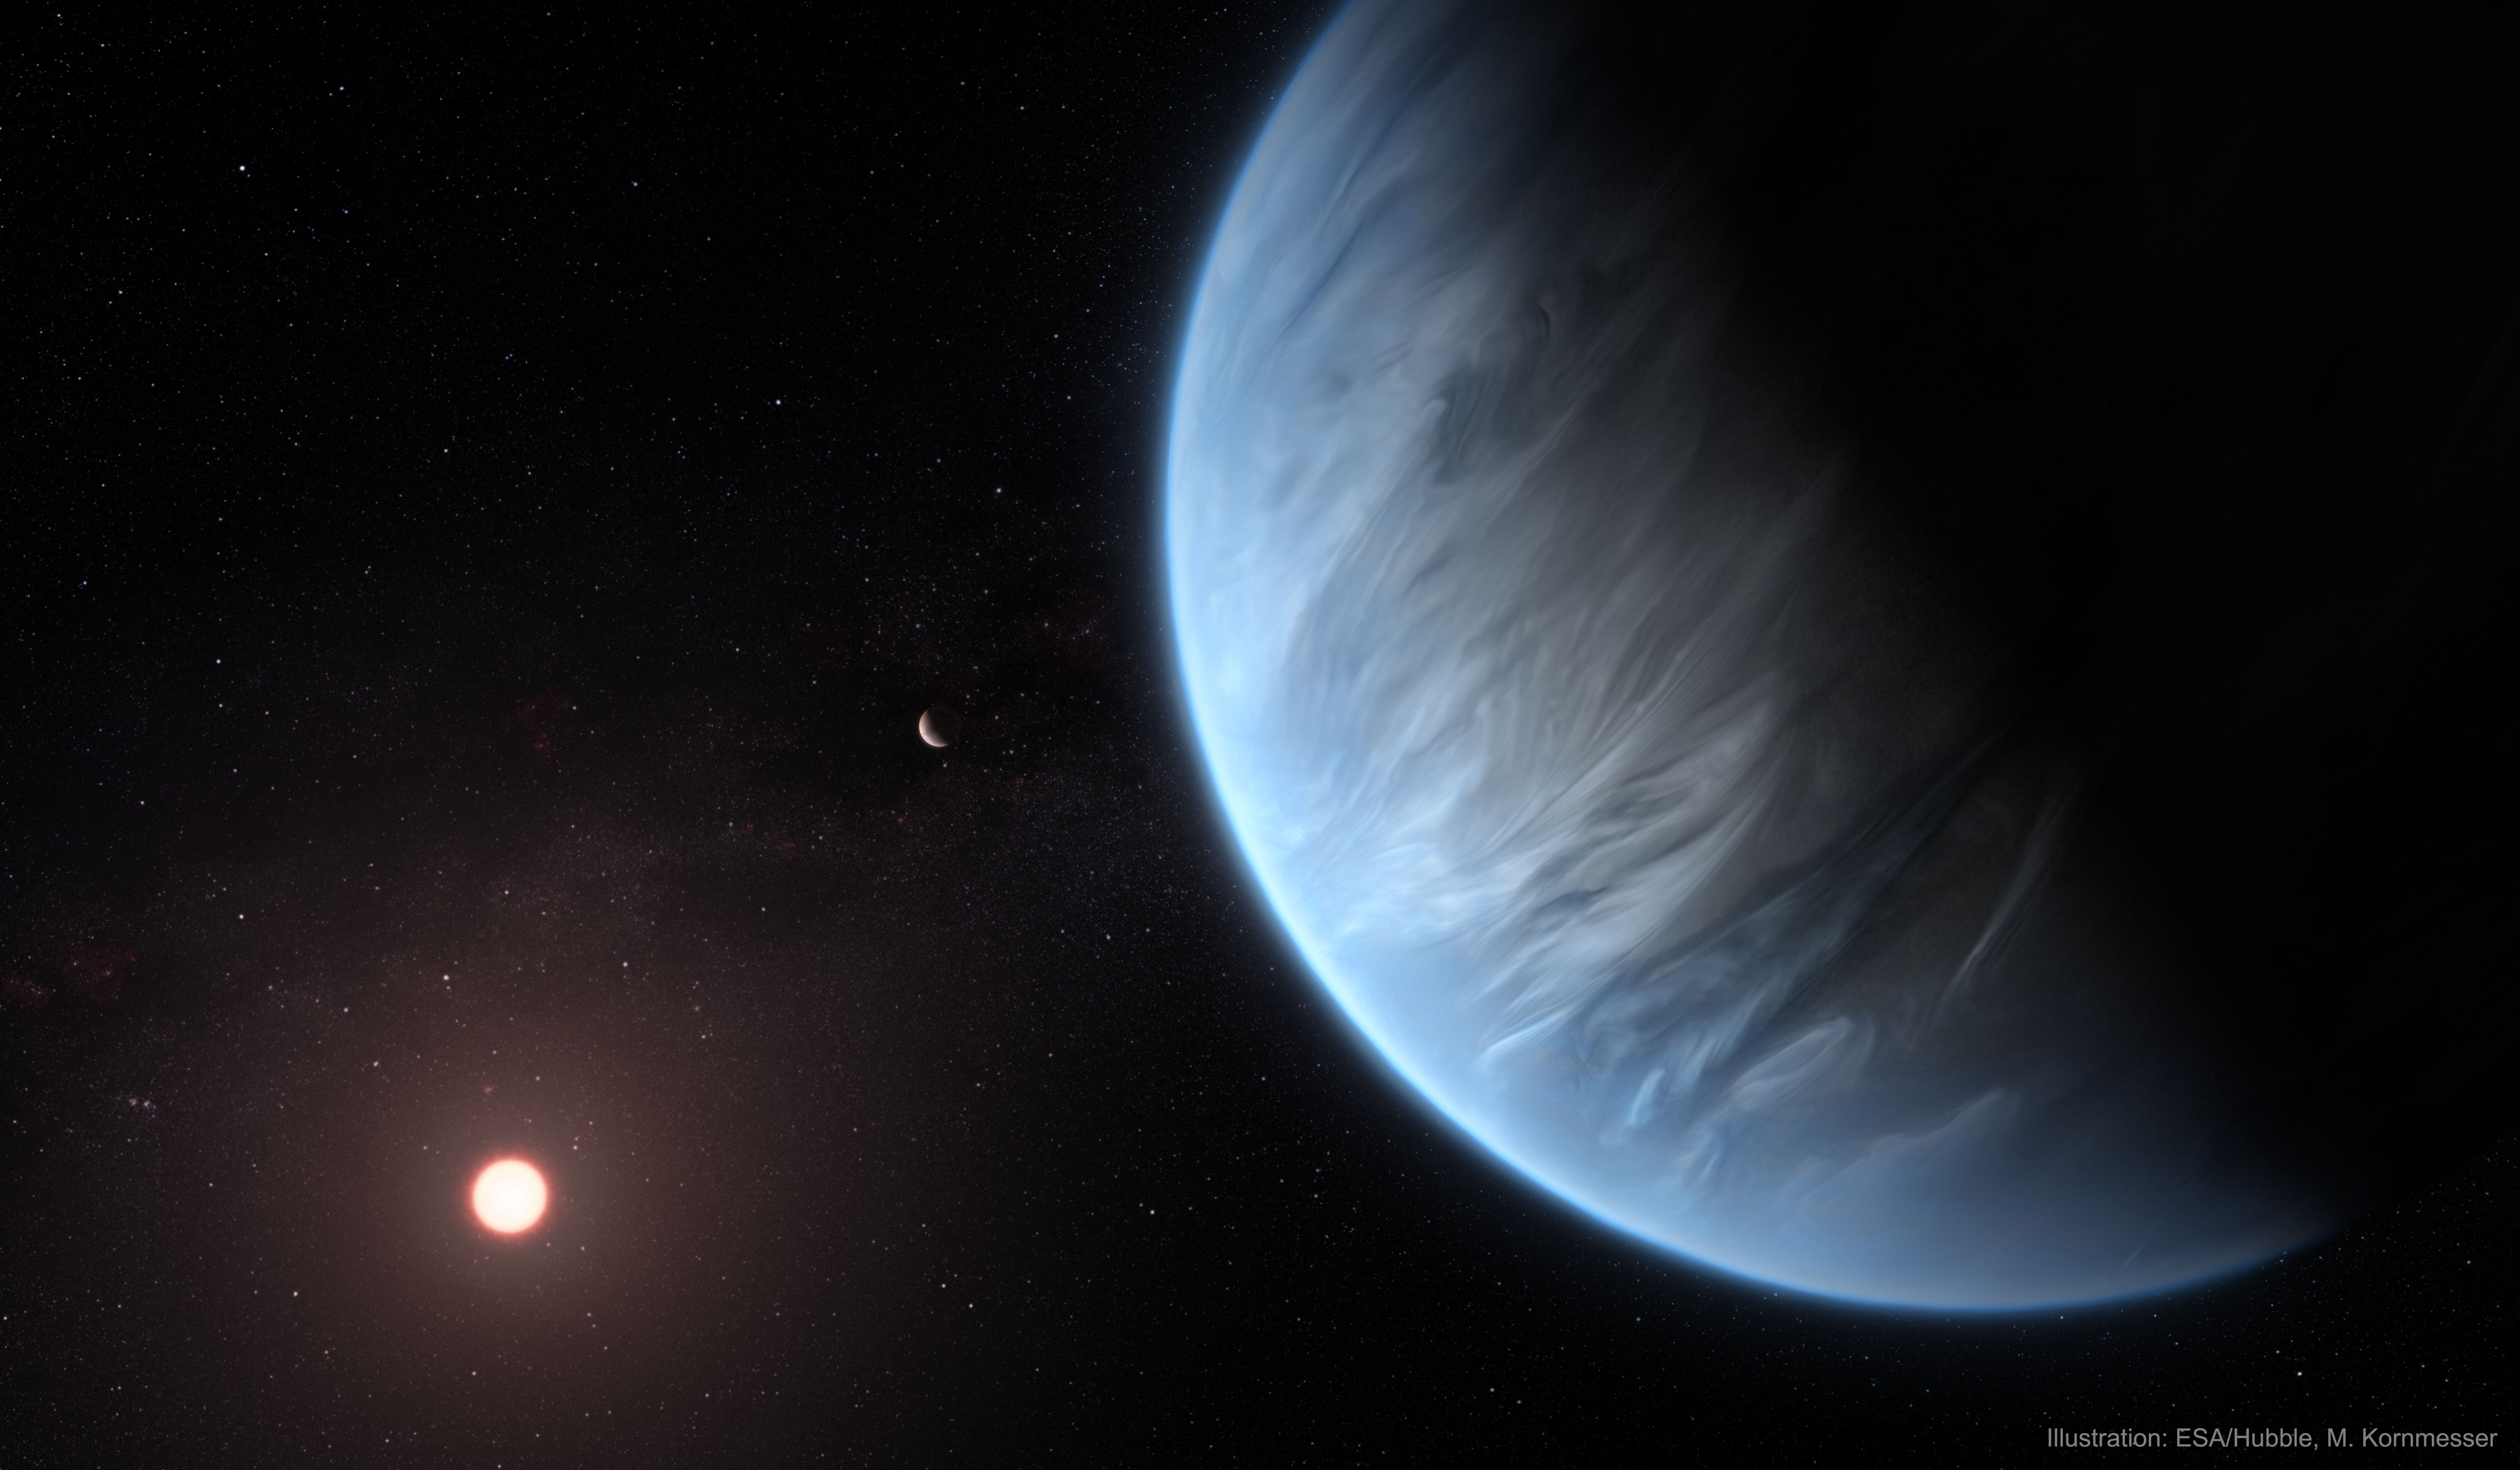 Na dalekoi ekzoplanete otkryt vodyanoi par